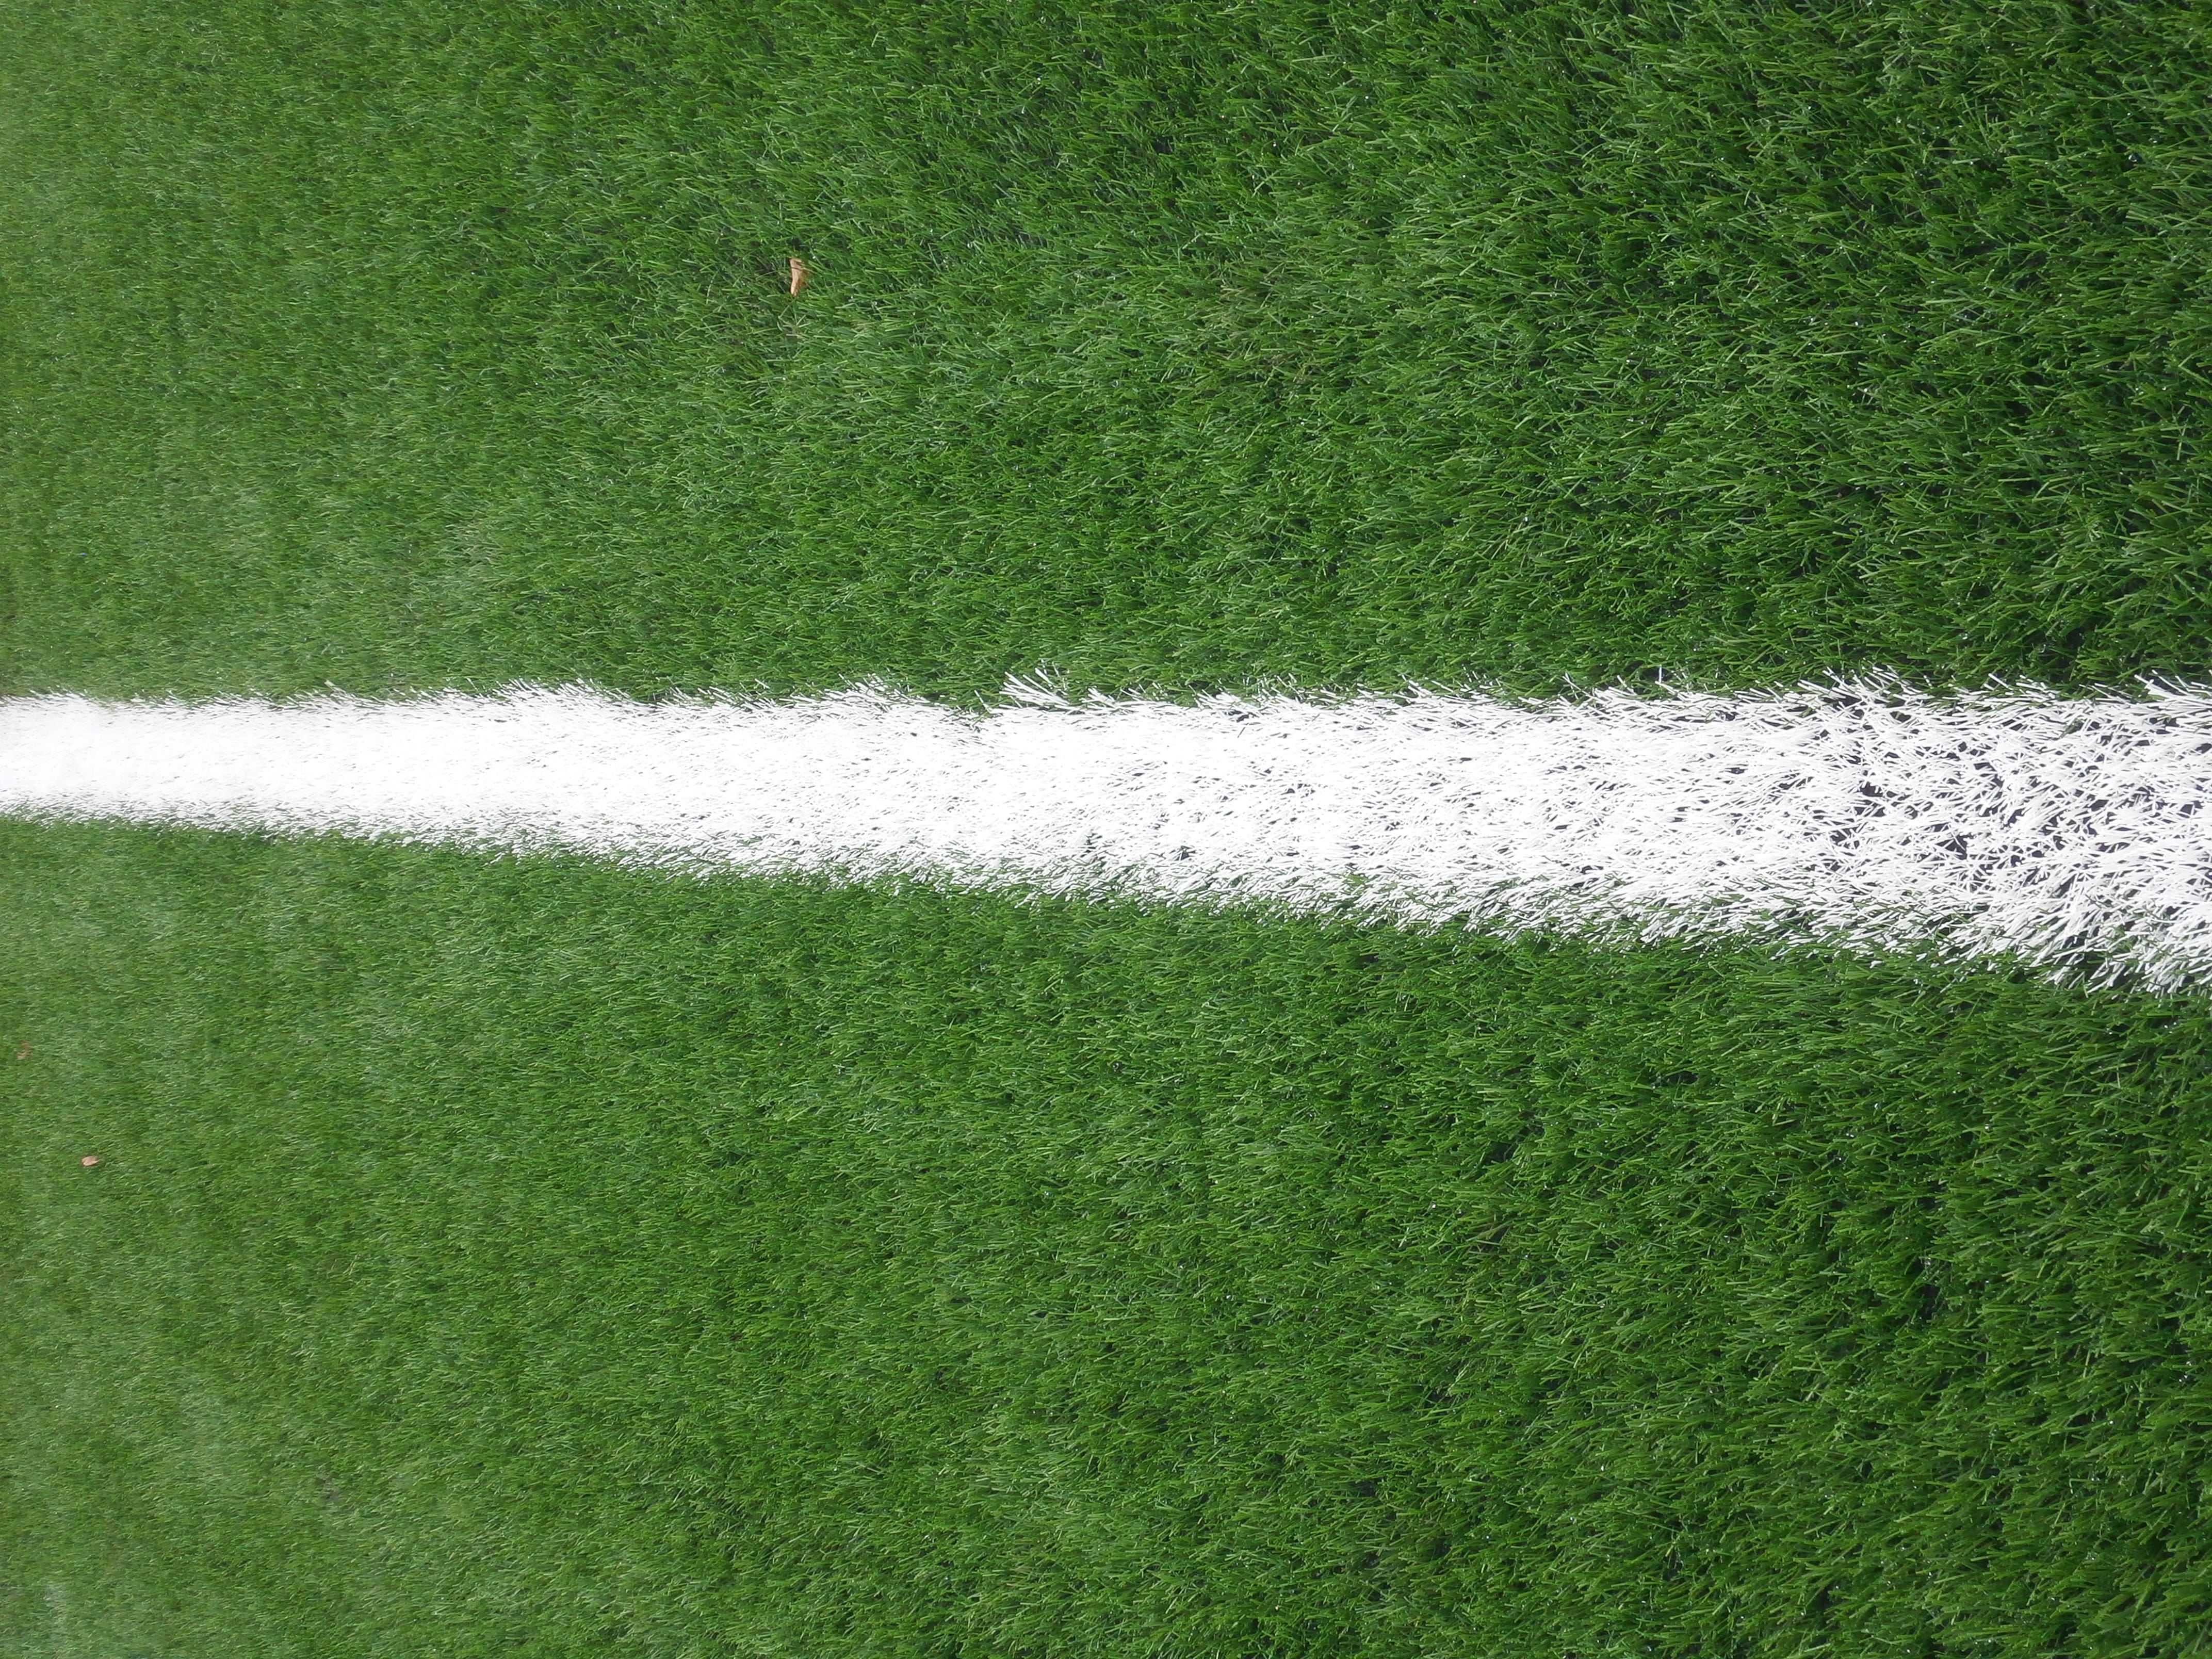 3g artificial grass pitch line